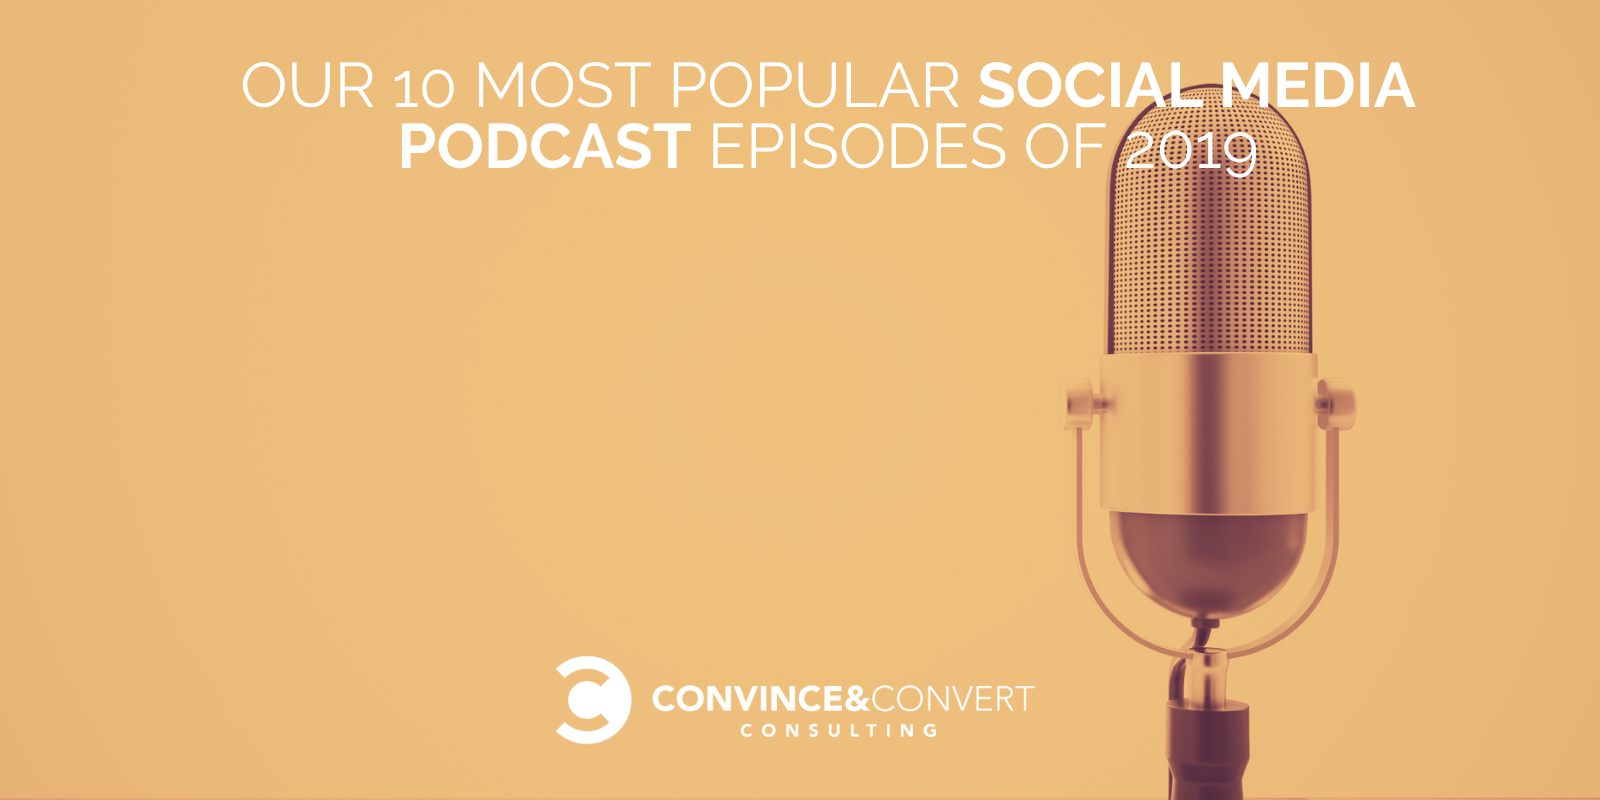 I nostri 10 episodi di podcast sui social media più popolari del 2019